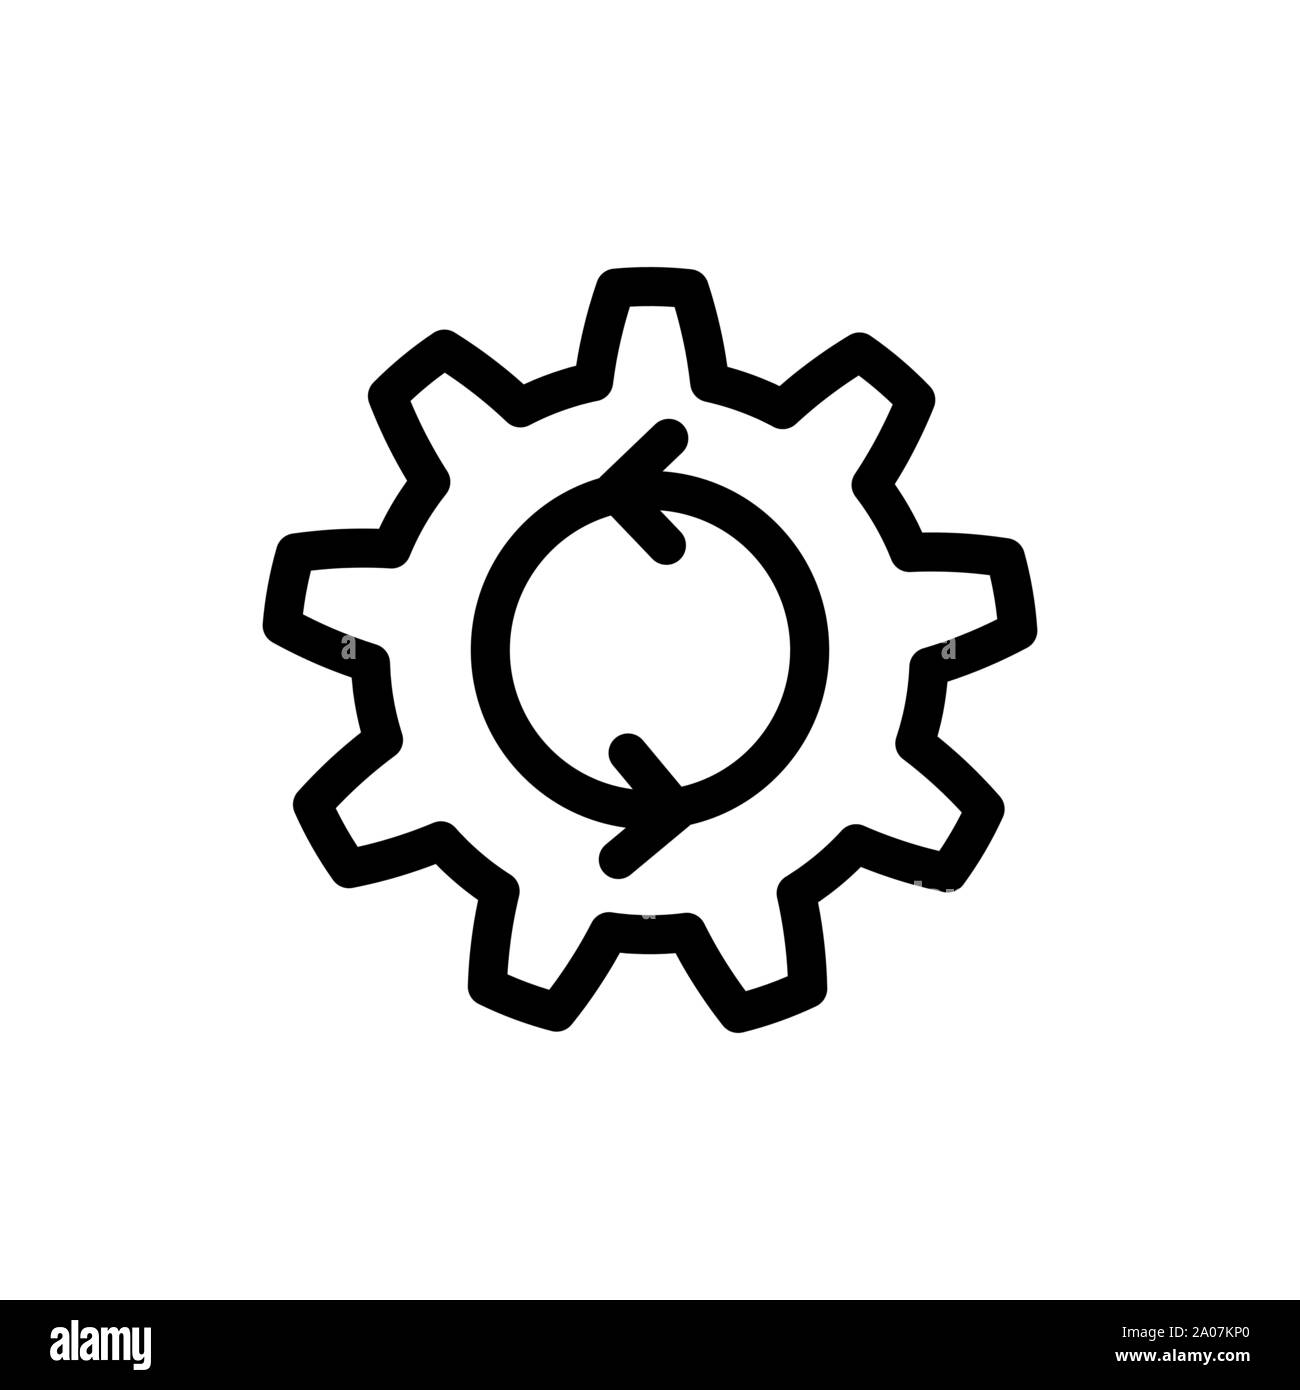 Process icon. Cogwheel with arrows process symbol Stock Vector